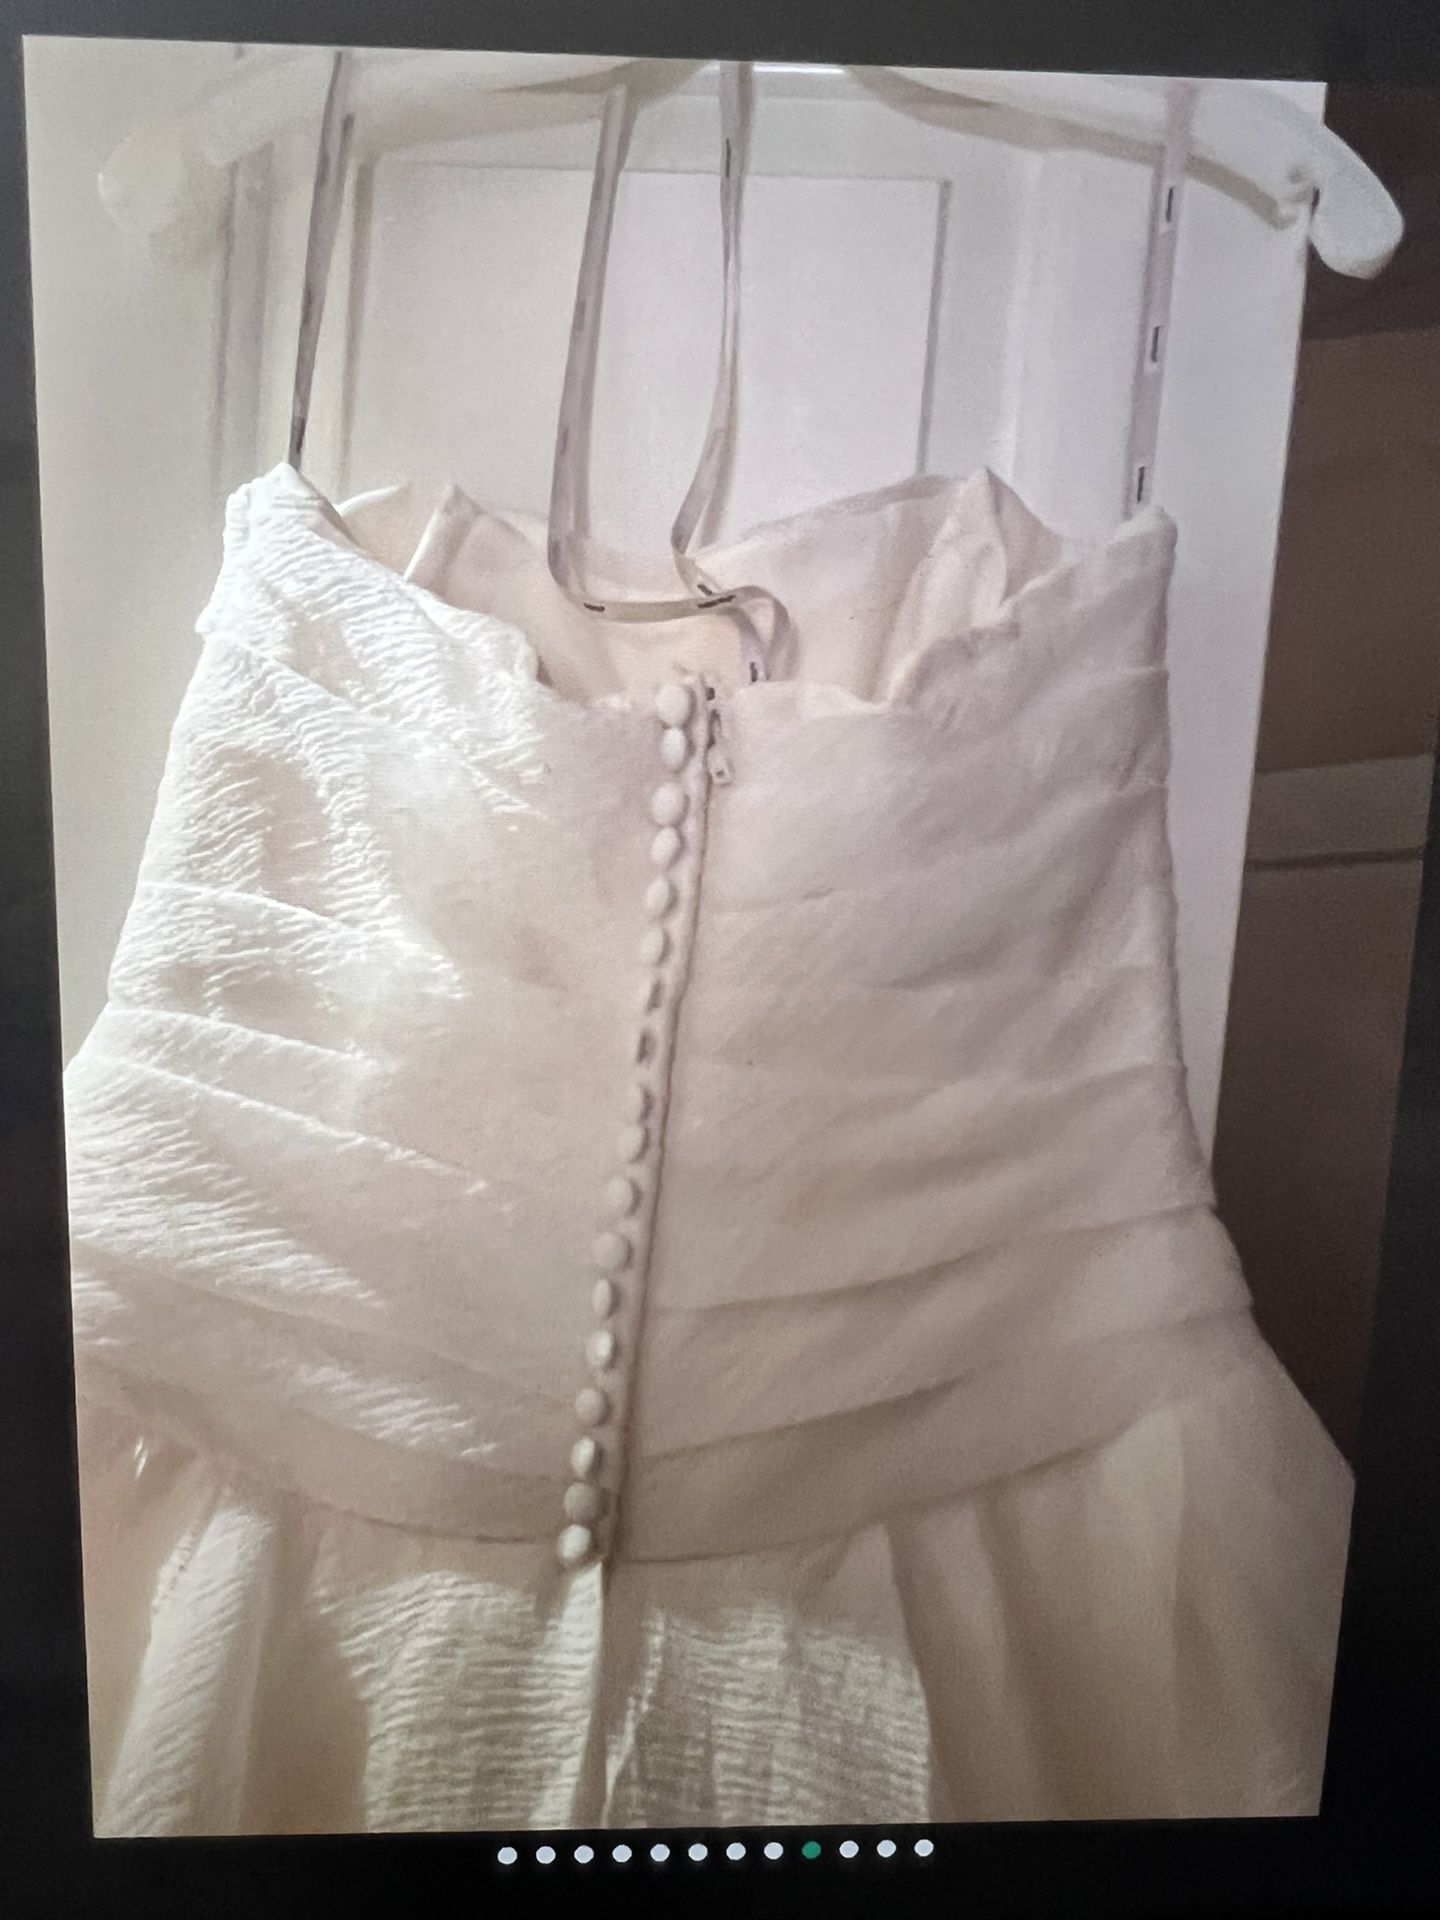 Beautiful ballgown wedding dress abd Veil  Never worn. Size 10